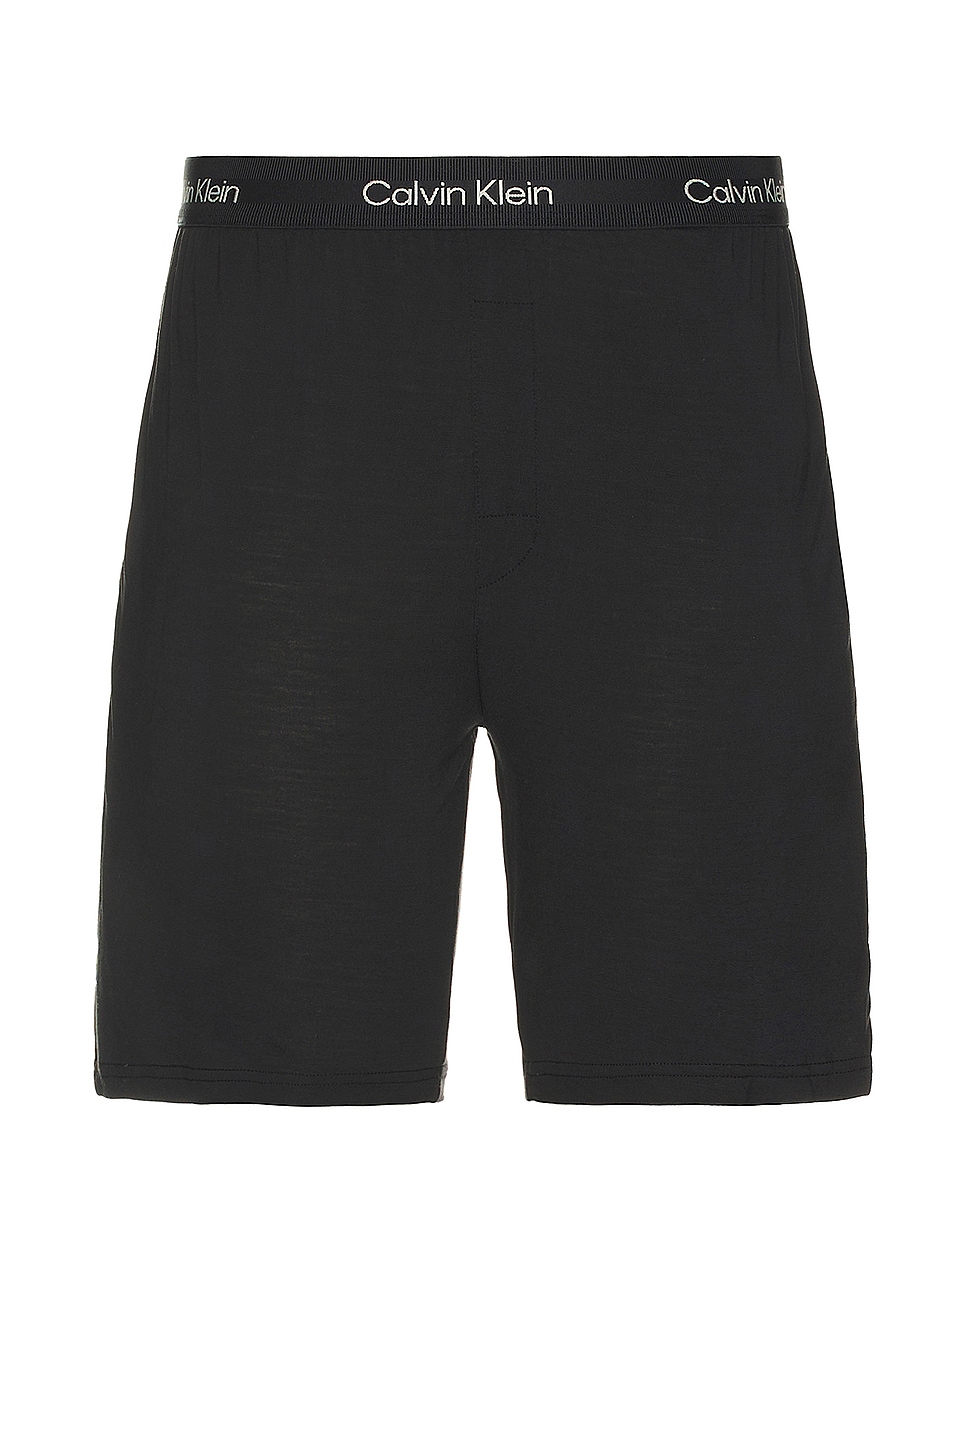 Image 1 of Calvin Klein Underwear Sleep Short in Black